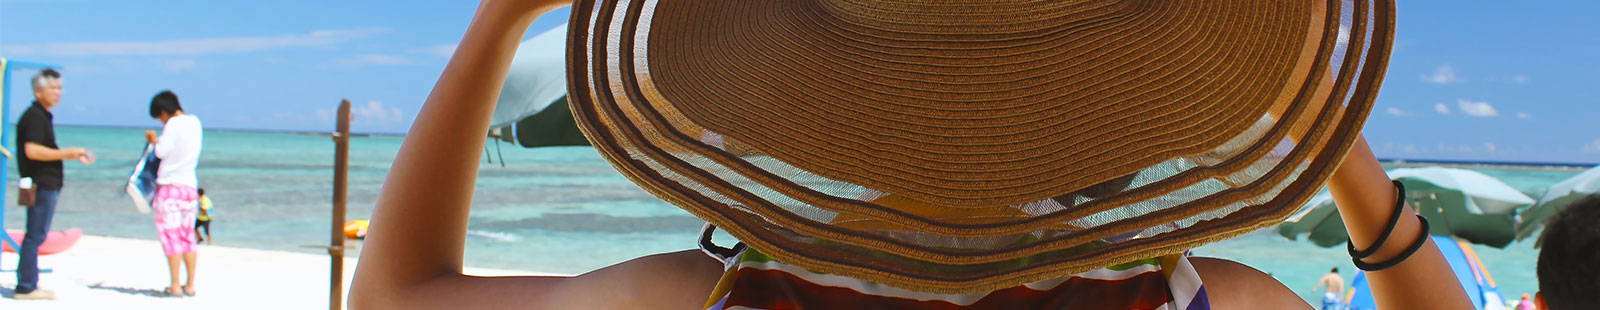 麦わら帽子には紫外線を約90%以上カットする効果があります | 帽子工房「麦」